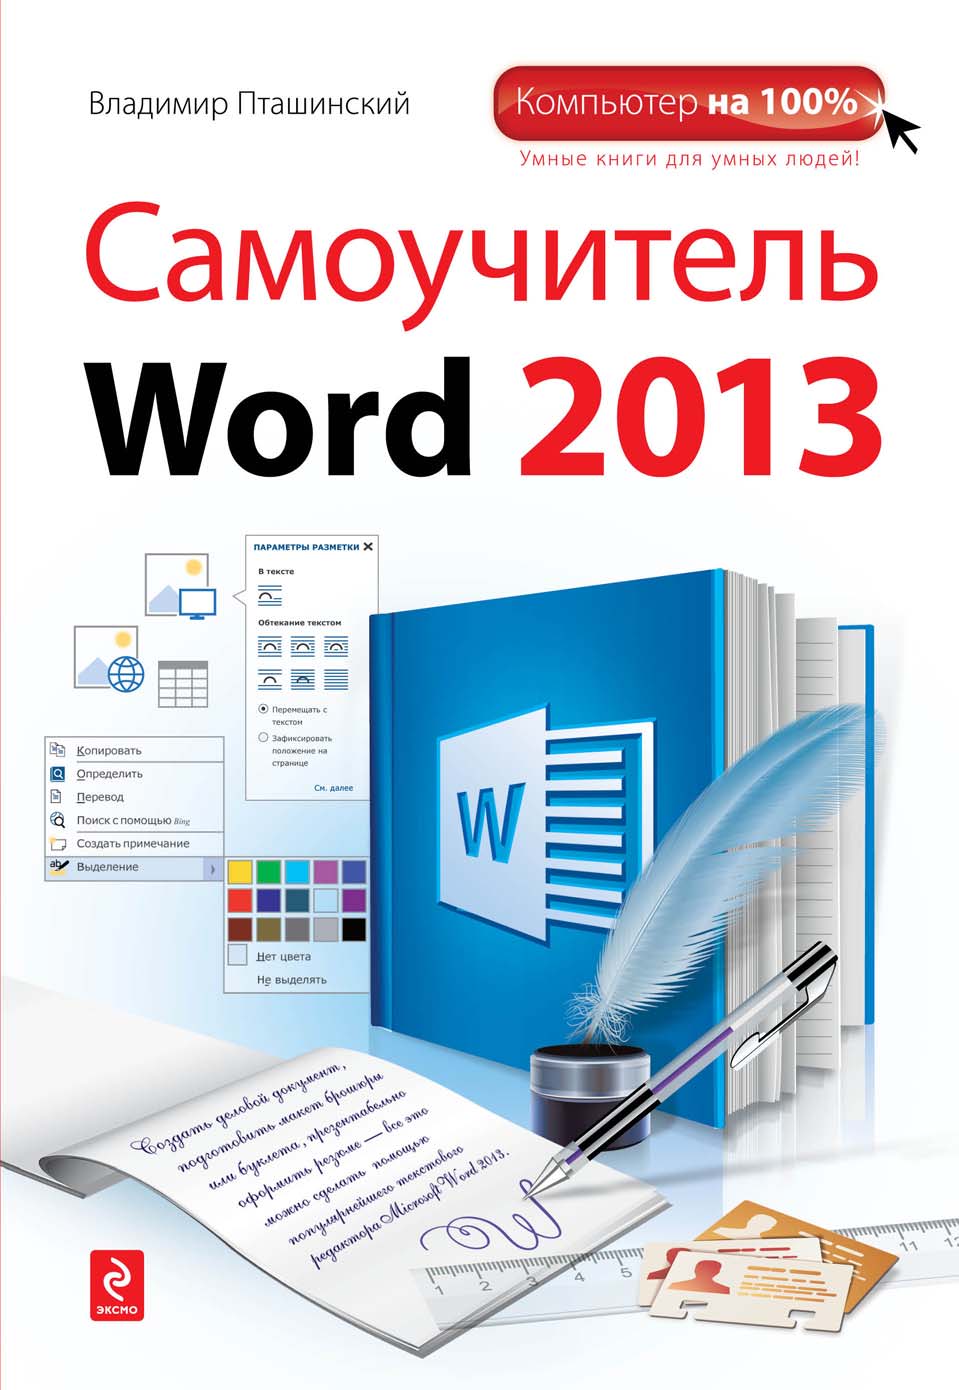 Книга Компьютер на 100% Самоучитель Word 2013 созданная Владимир Пташинский может относится к жанру программы. Стоимость электронной книги Самоучитель Word 2013 с идентификатором 7389382 составляет 249.00 руб.